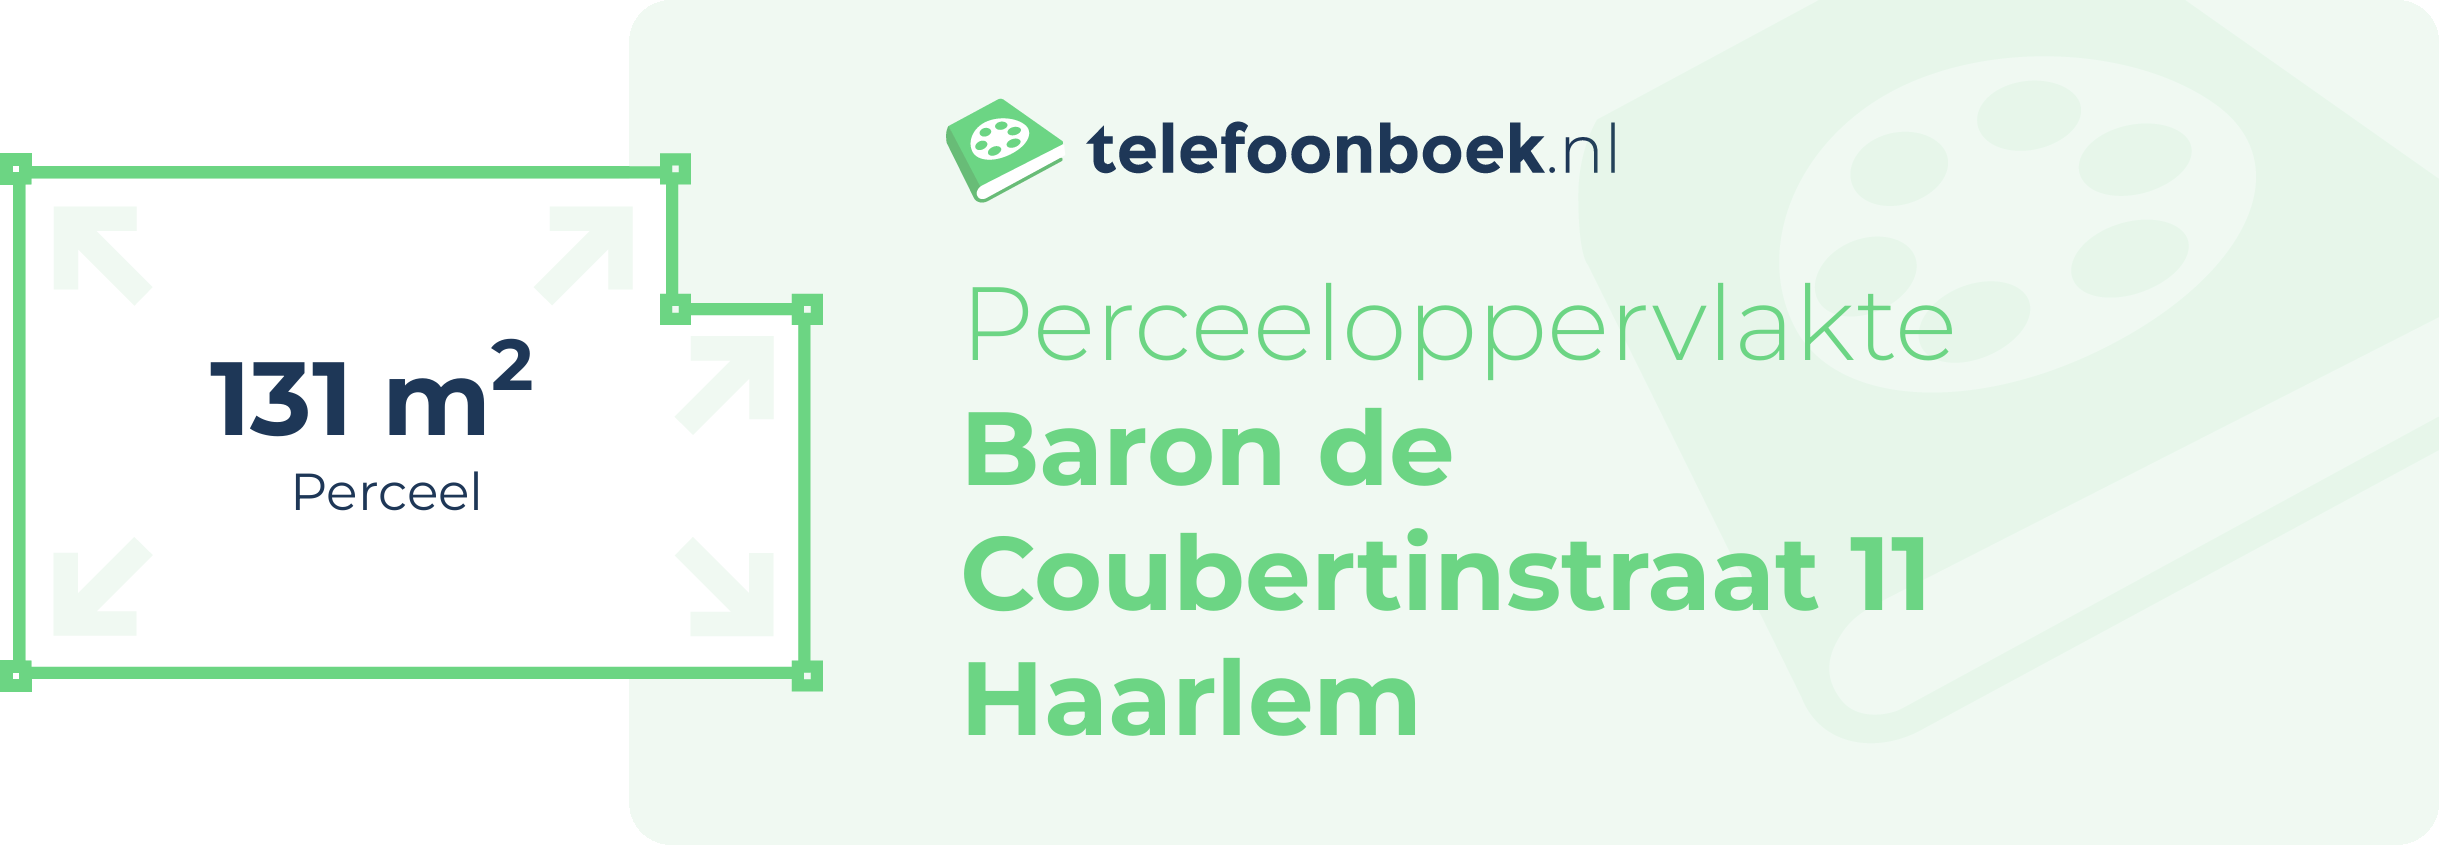 Perceeloppervlakte Baron De Coubertinstraat 11 Haarlem